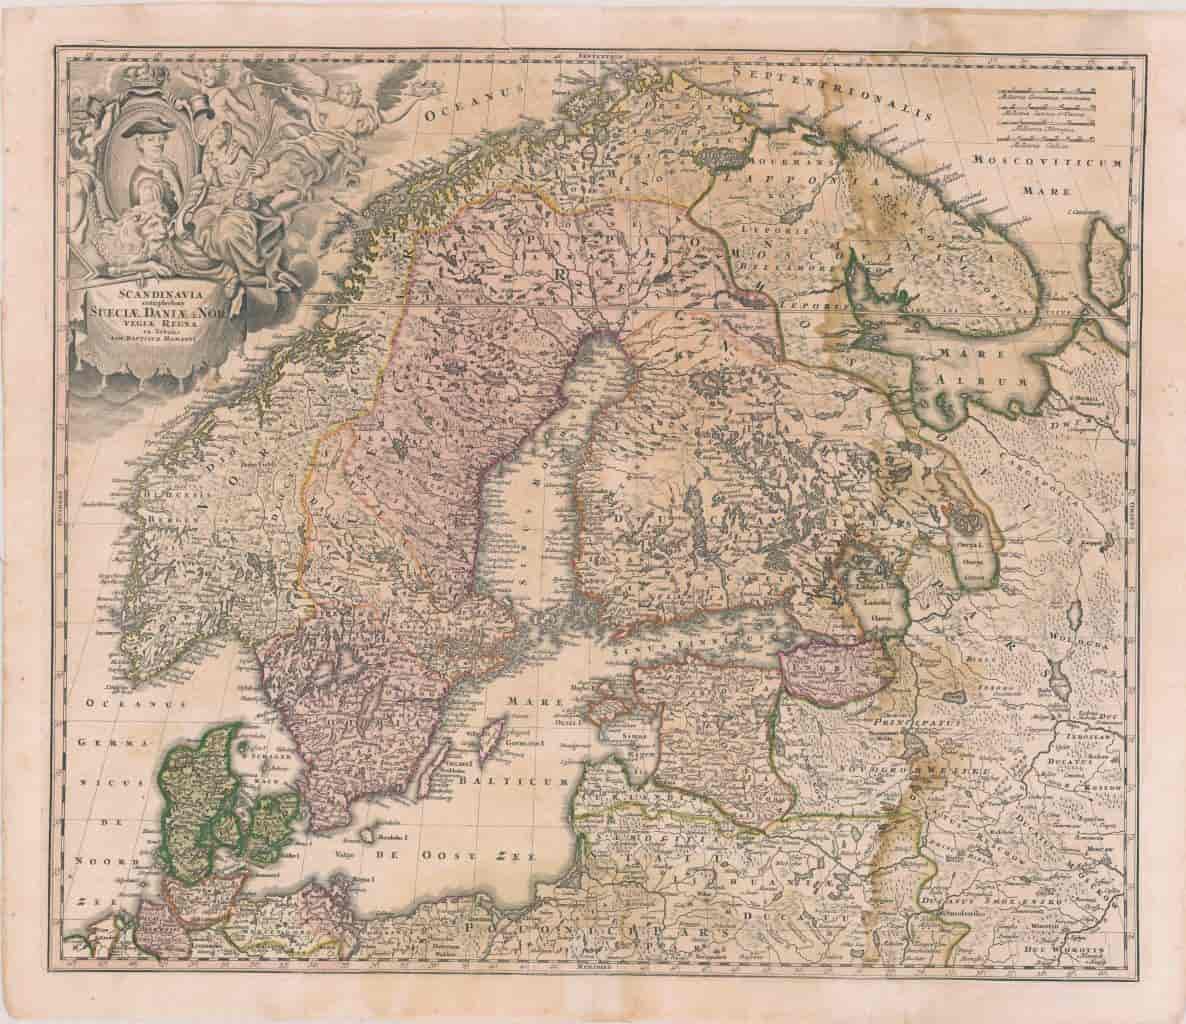 Scandinavia complectens Sueciæ, Daniæ & Norvegiæ regna. ex Tabulis Ioh Baptistæ Homanni. 1715